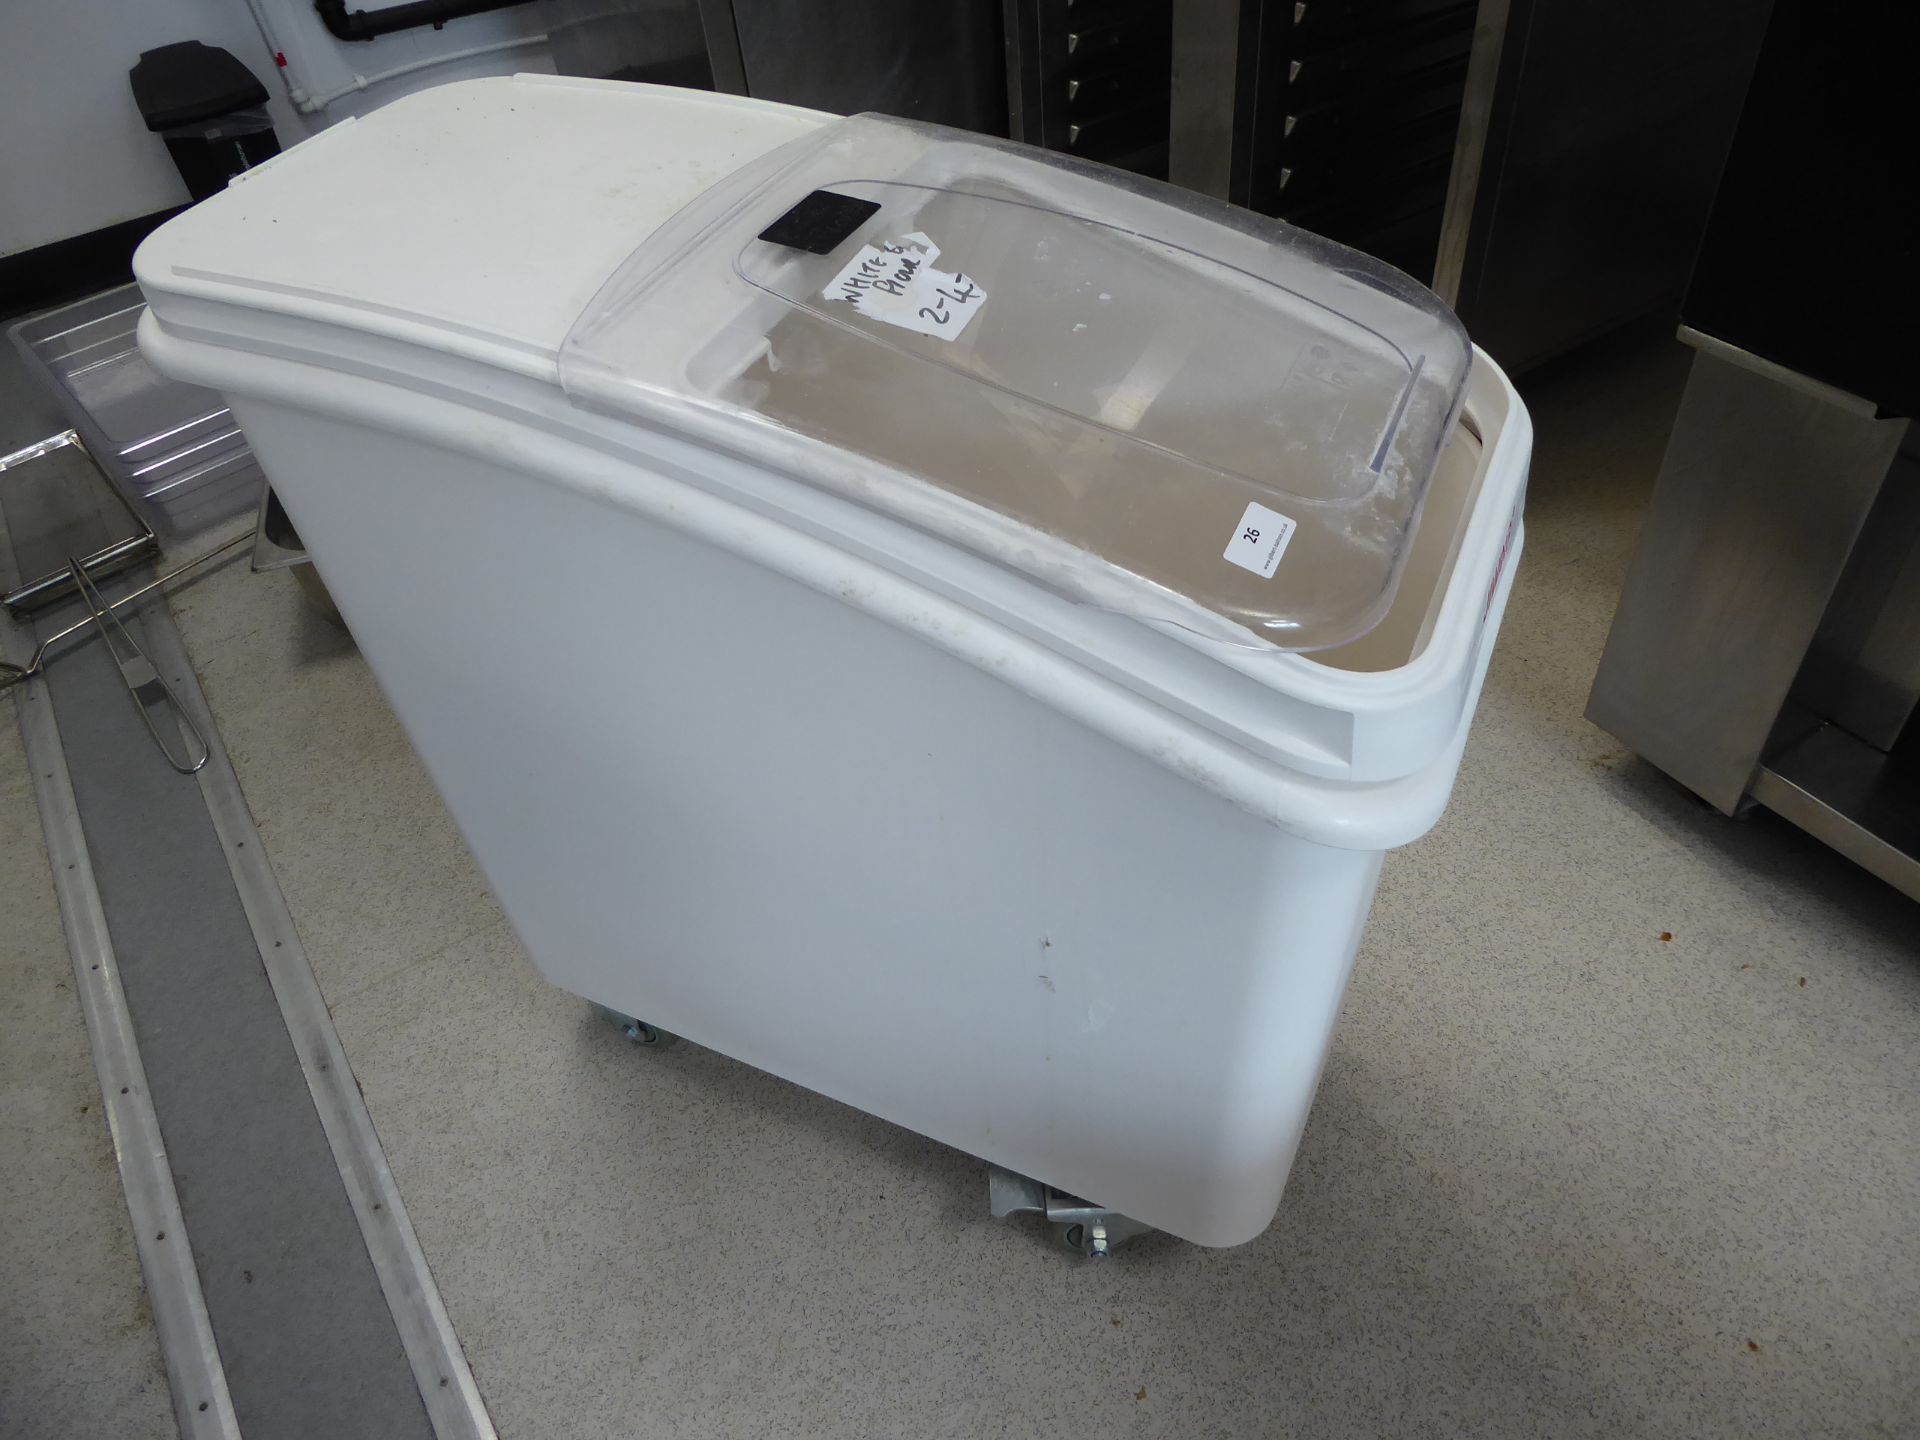 * large mobile flour bin with sliding lid - 300w x 700d x 750h